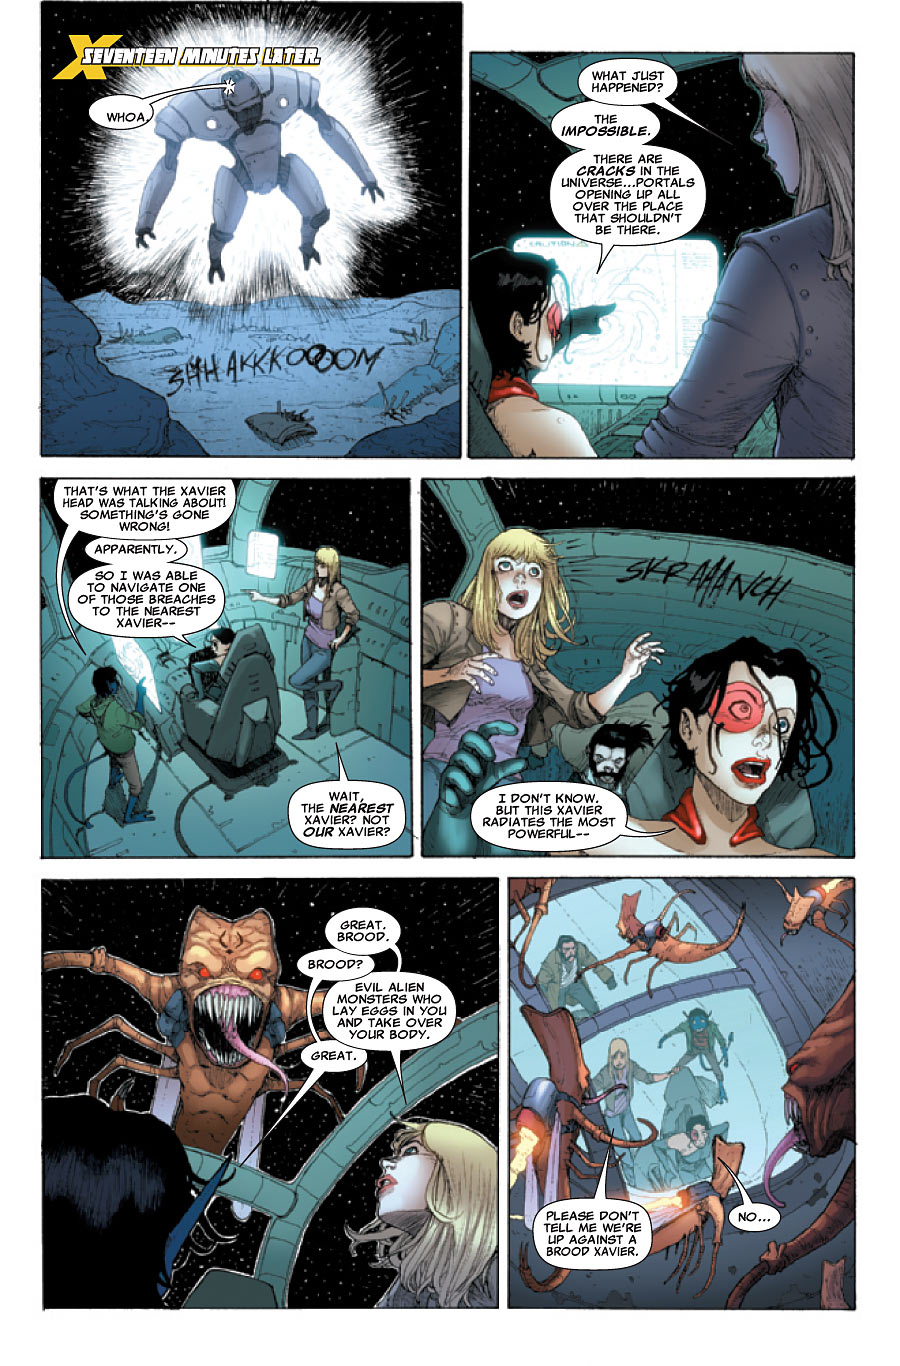 X-Treme X-Men #7-1 page 2